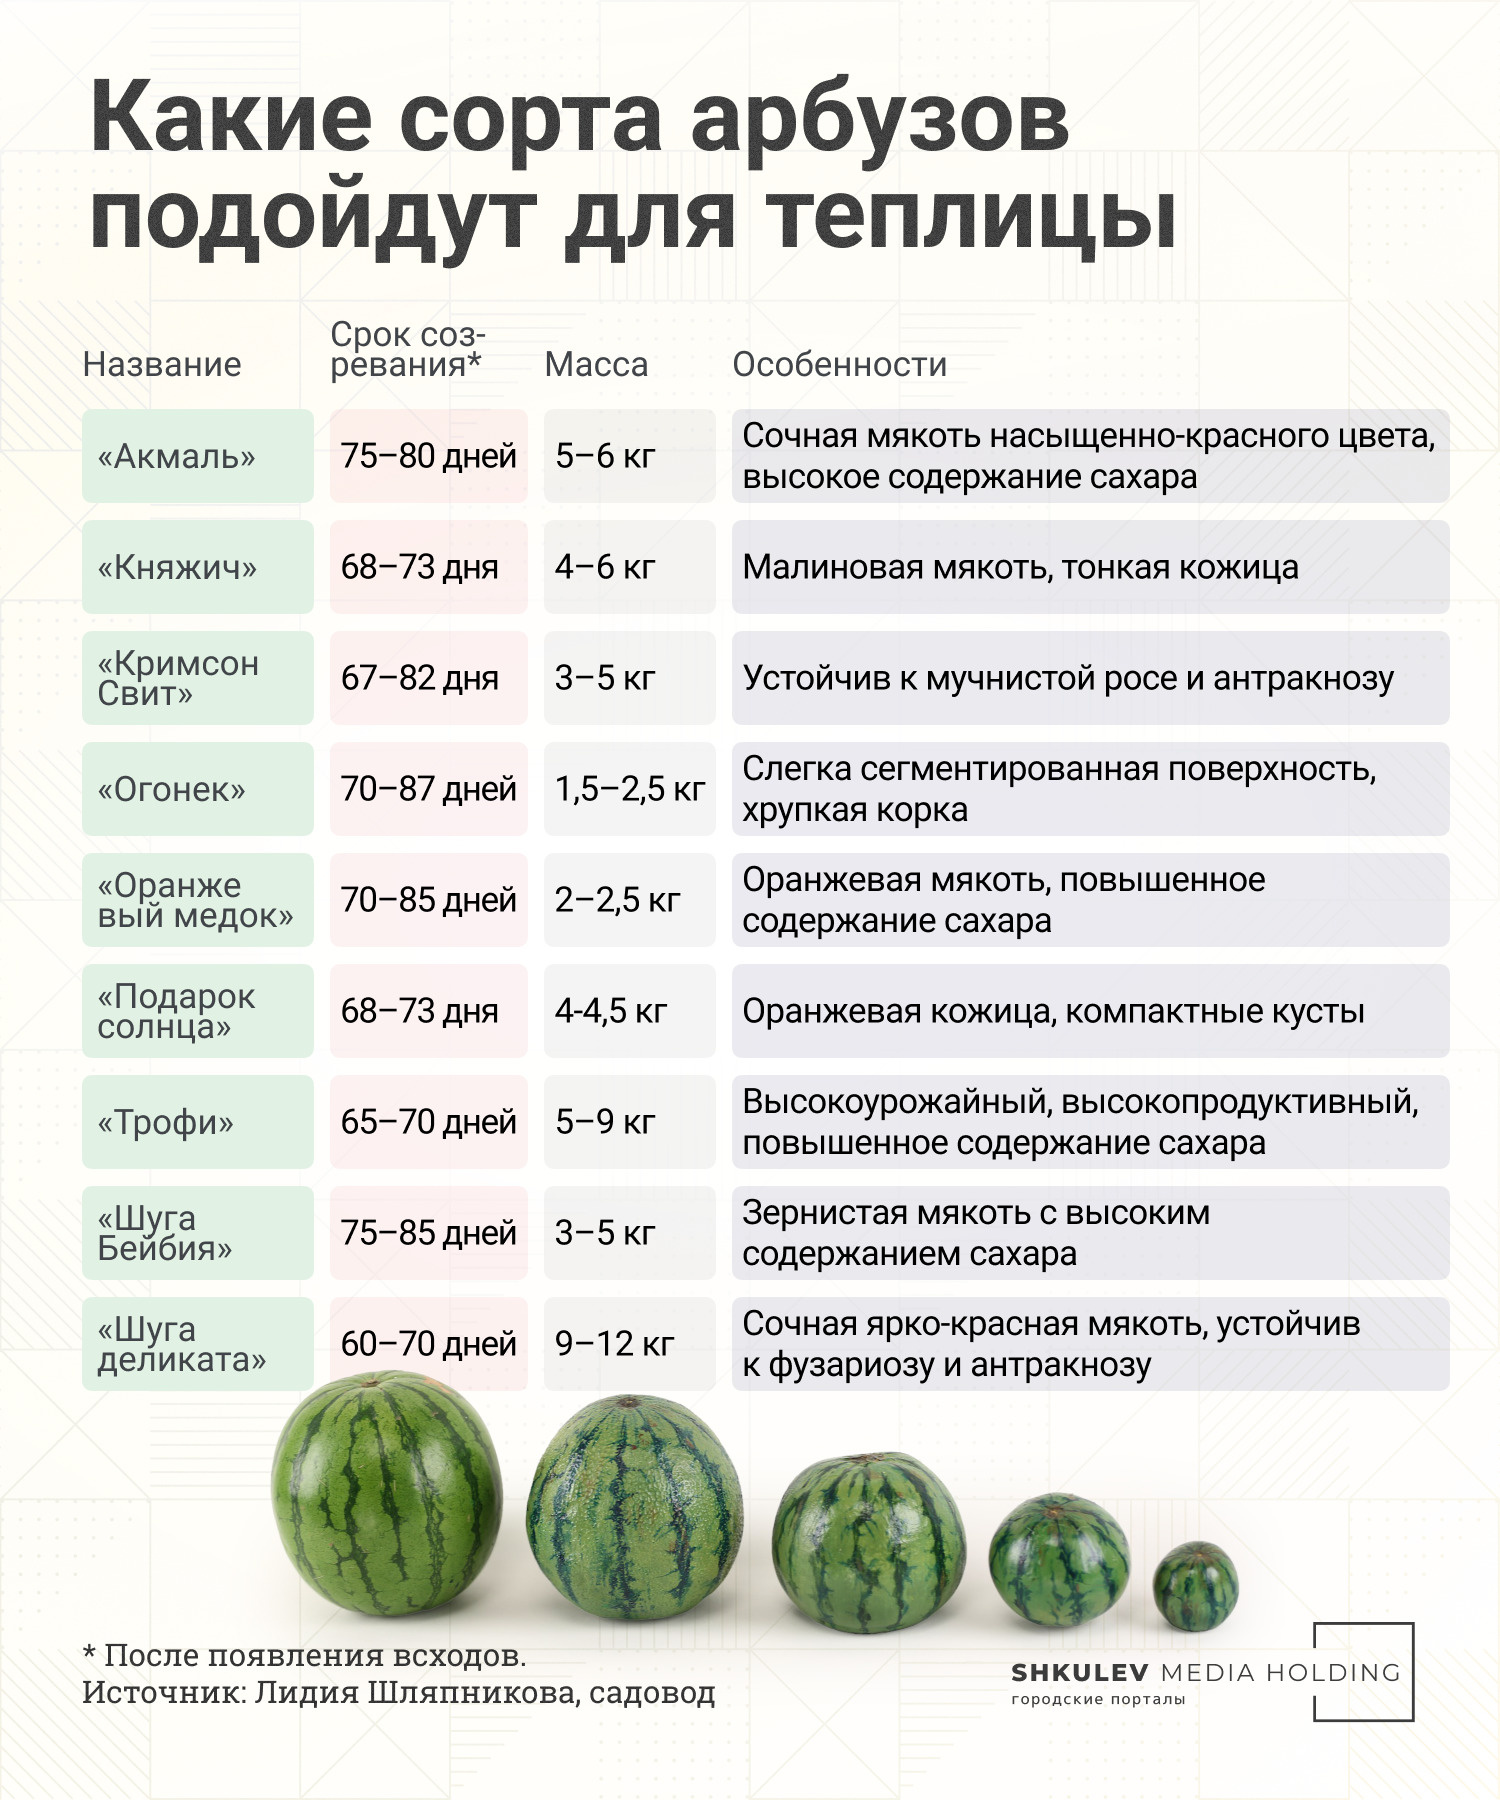 Вкусные дыни и арбузы своими руками: как вырастить бахчу в огороде - 16июня 2022 - НГС